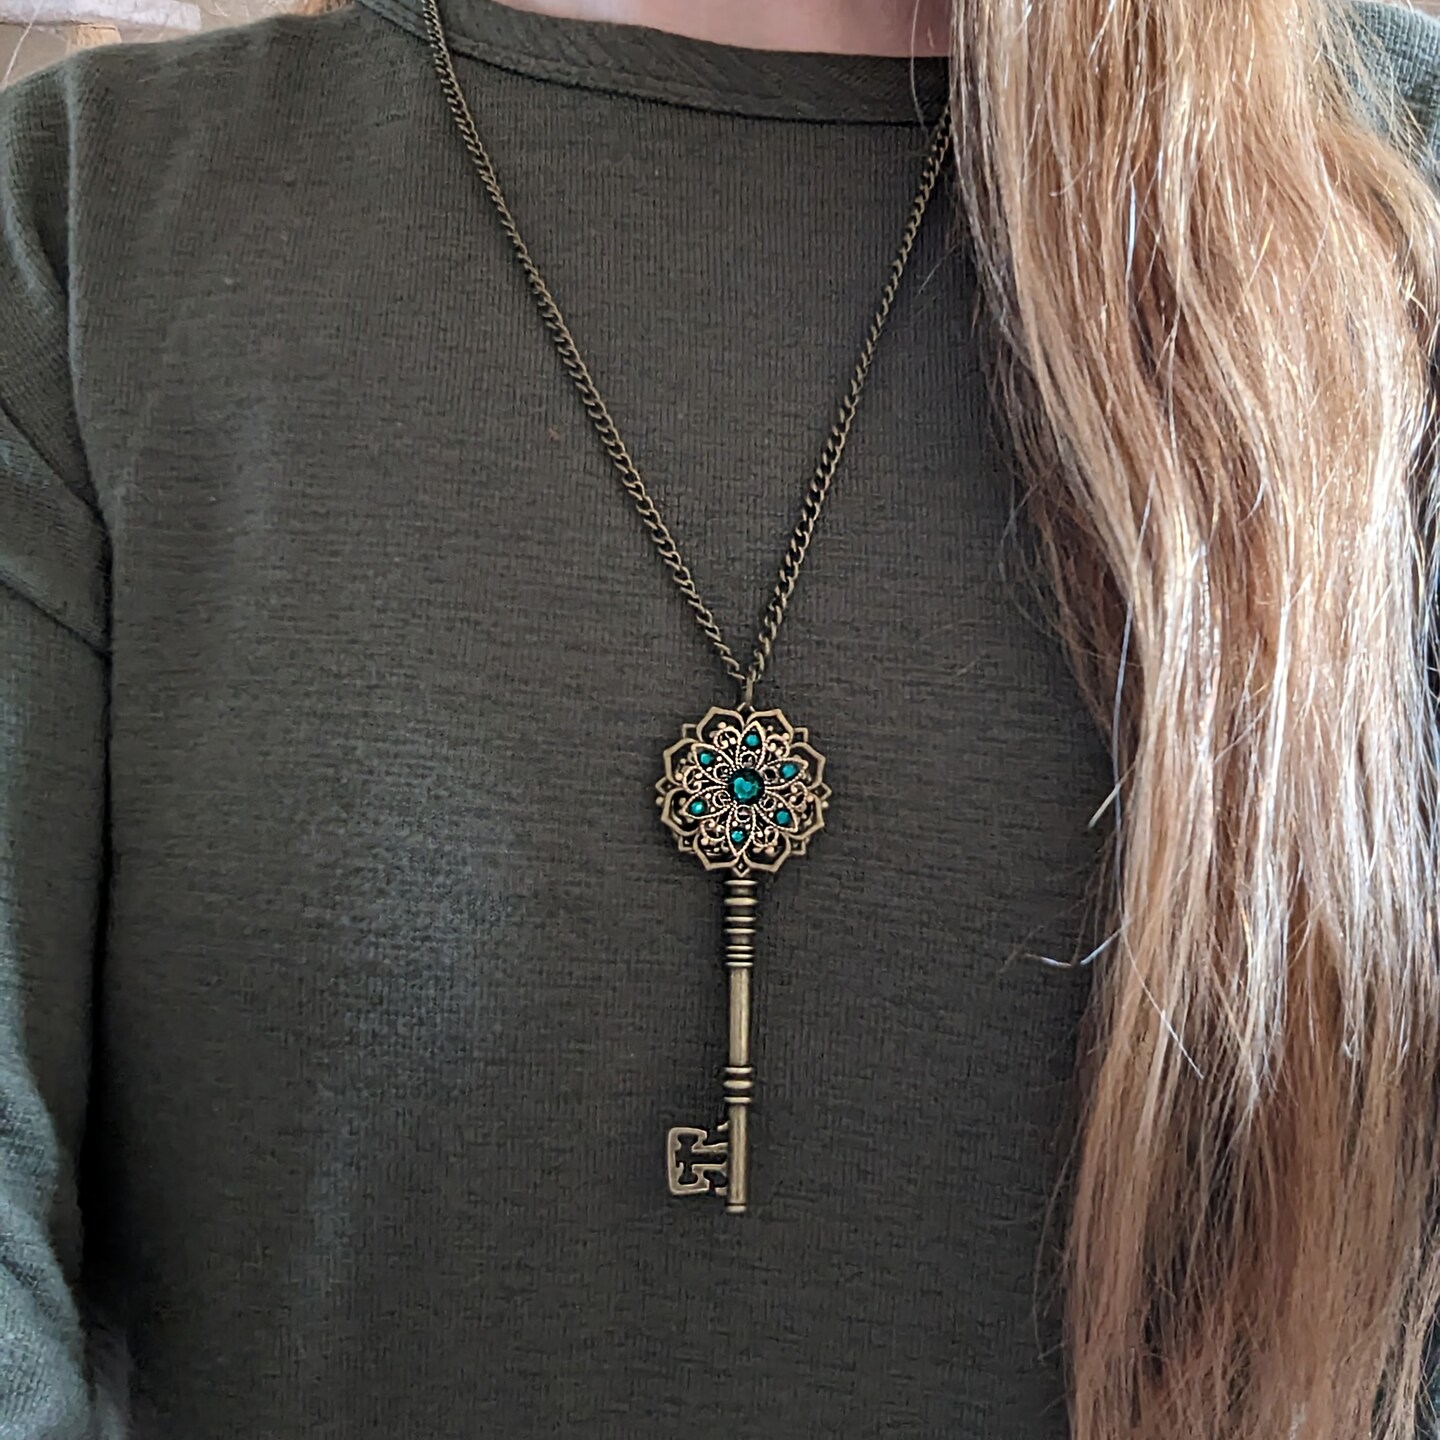 Imitating Magic Key Necklace | Necklace, Key necklace, Pendant